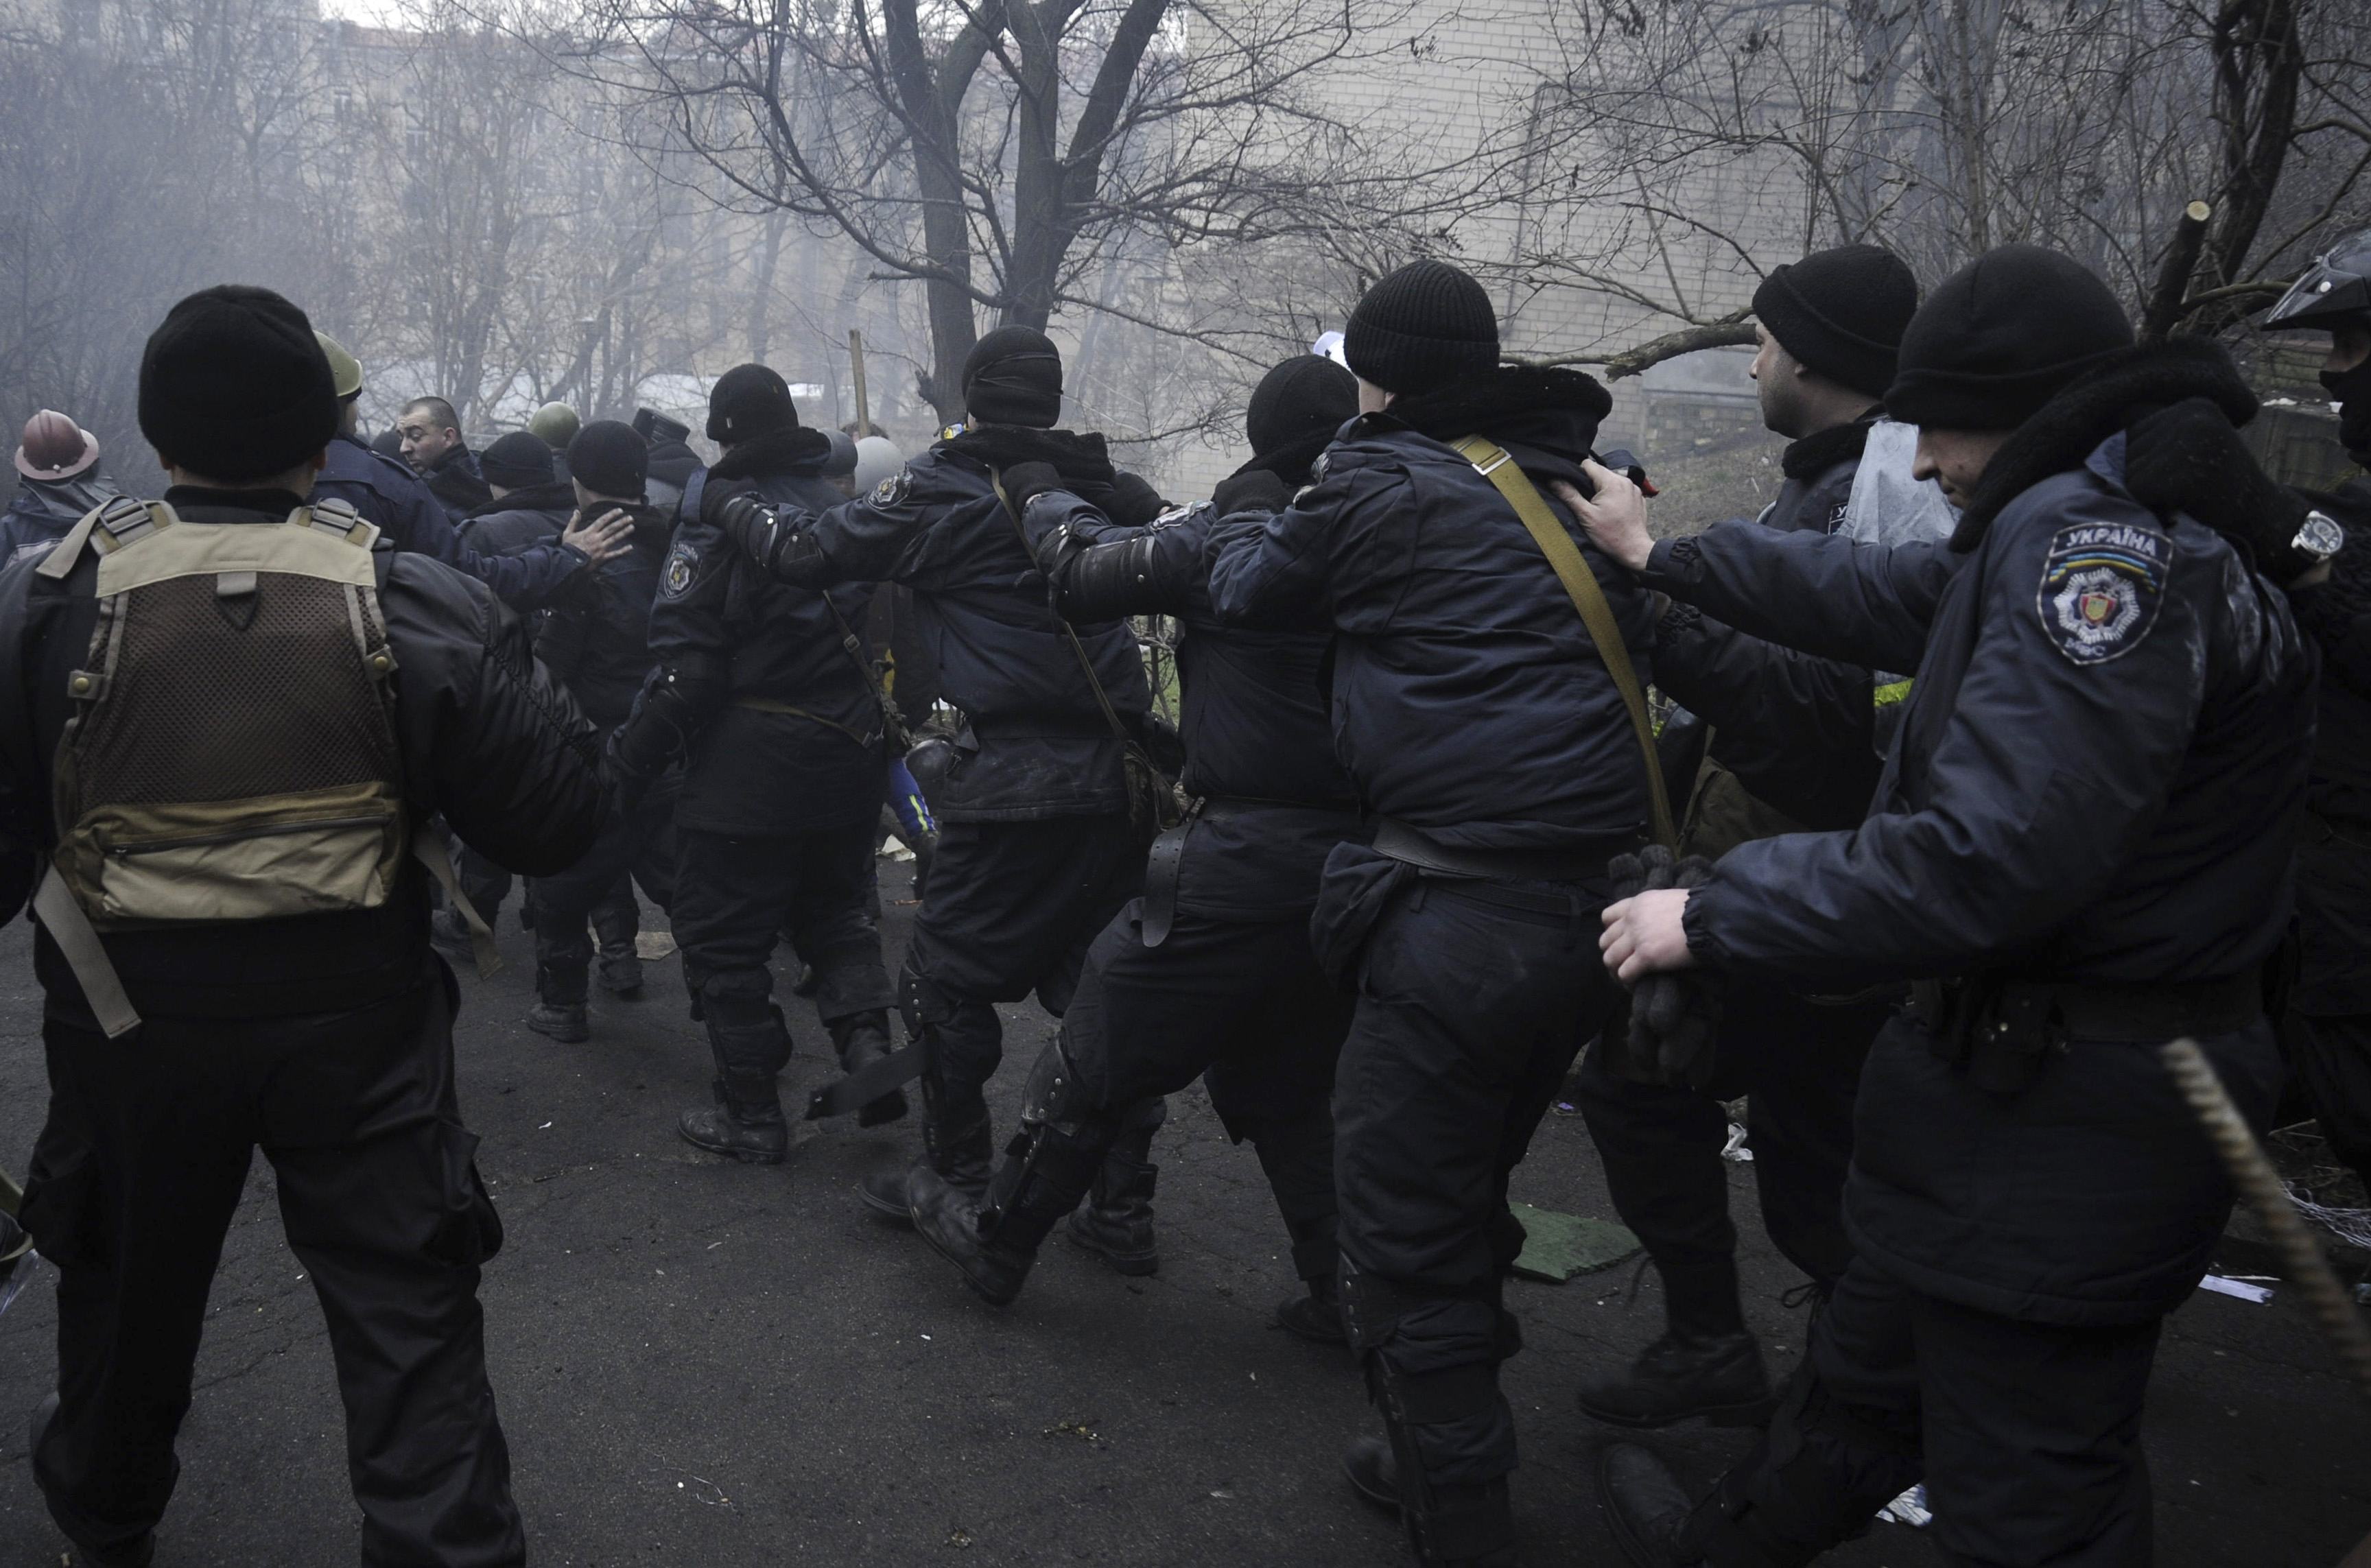 Αστυνομικοί αιχμάλωτοι των διαδηλωτών - Υπήρξαν και πληροφορίες πως 100 αστυνομικοί προσχώρησαν στις τάξεις της αντιπολίτευσης